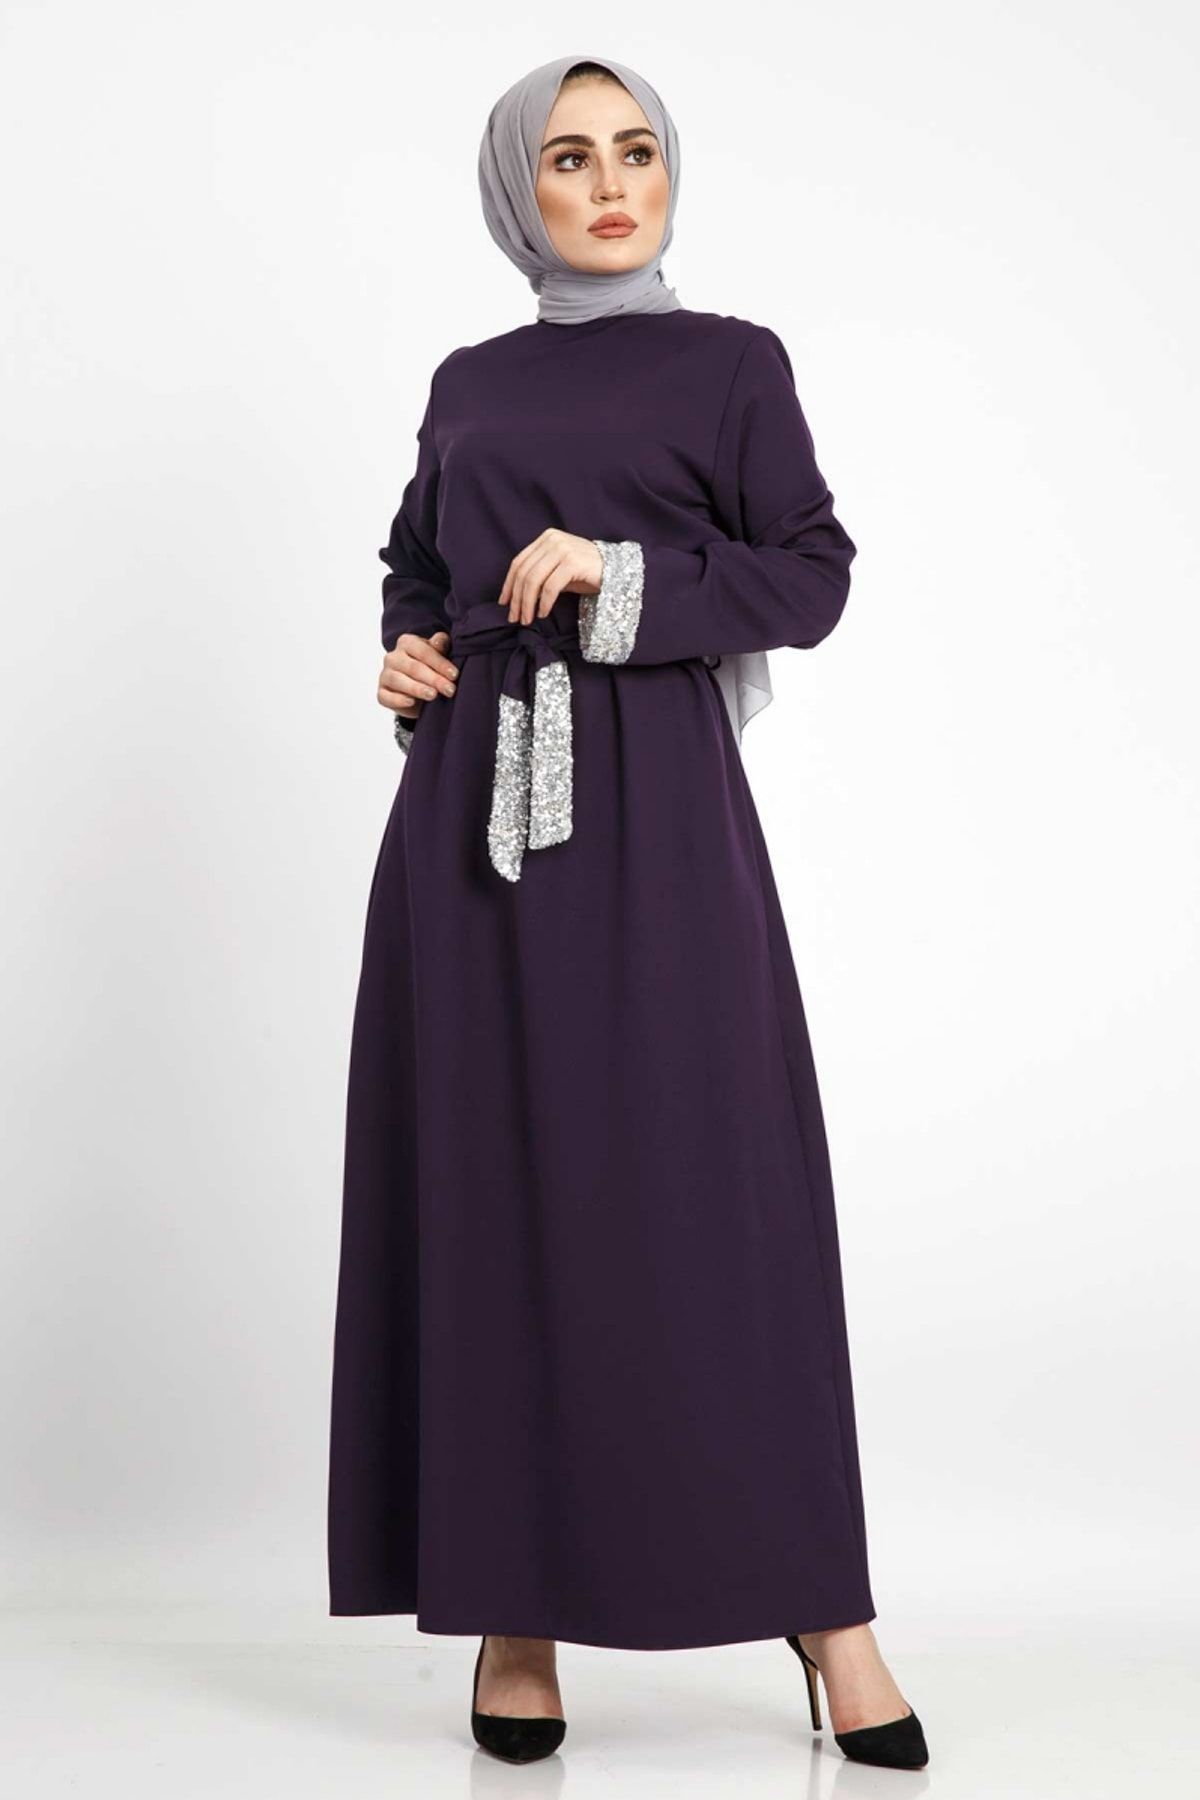 Tesettür Dünyası Kadın Büyük Beden Pul Payetli Elbise TSD855 Mor TSD855